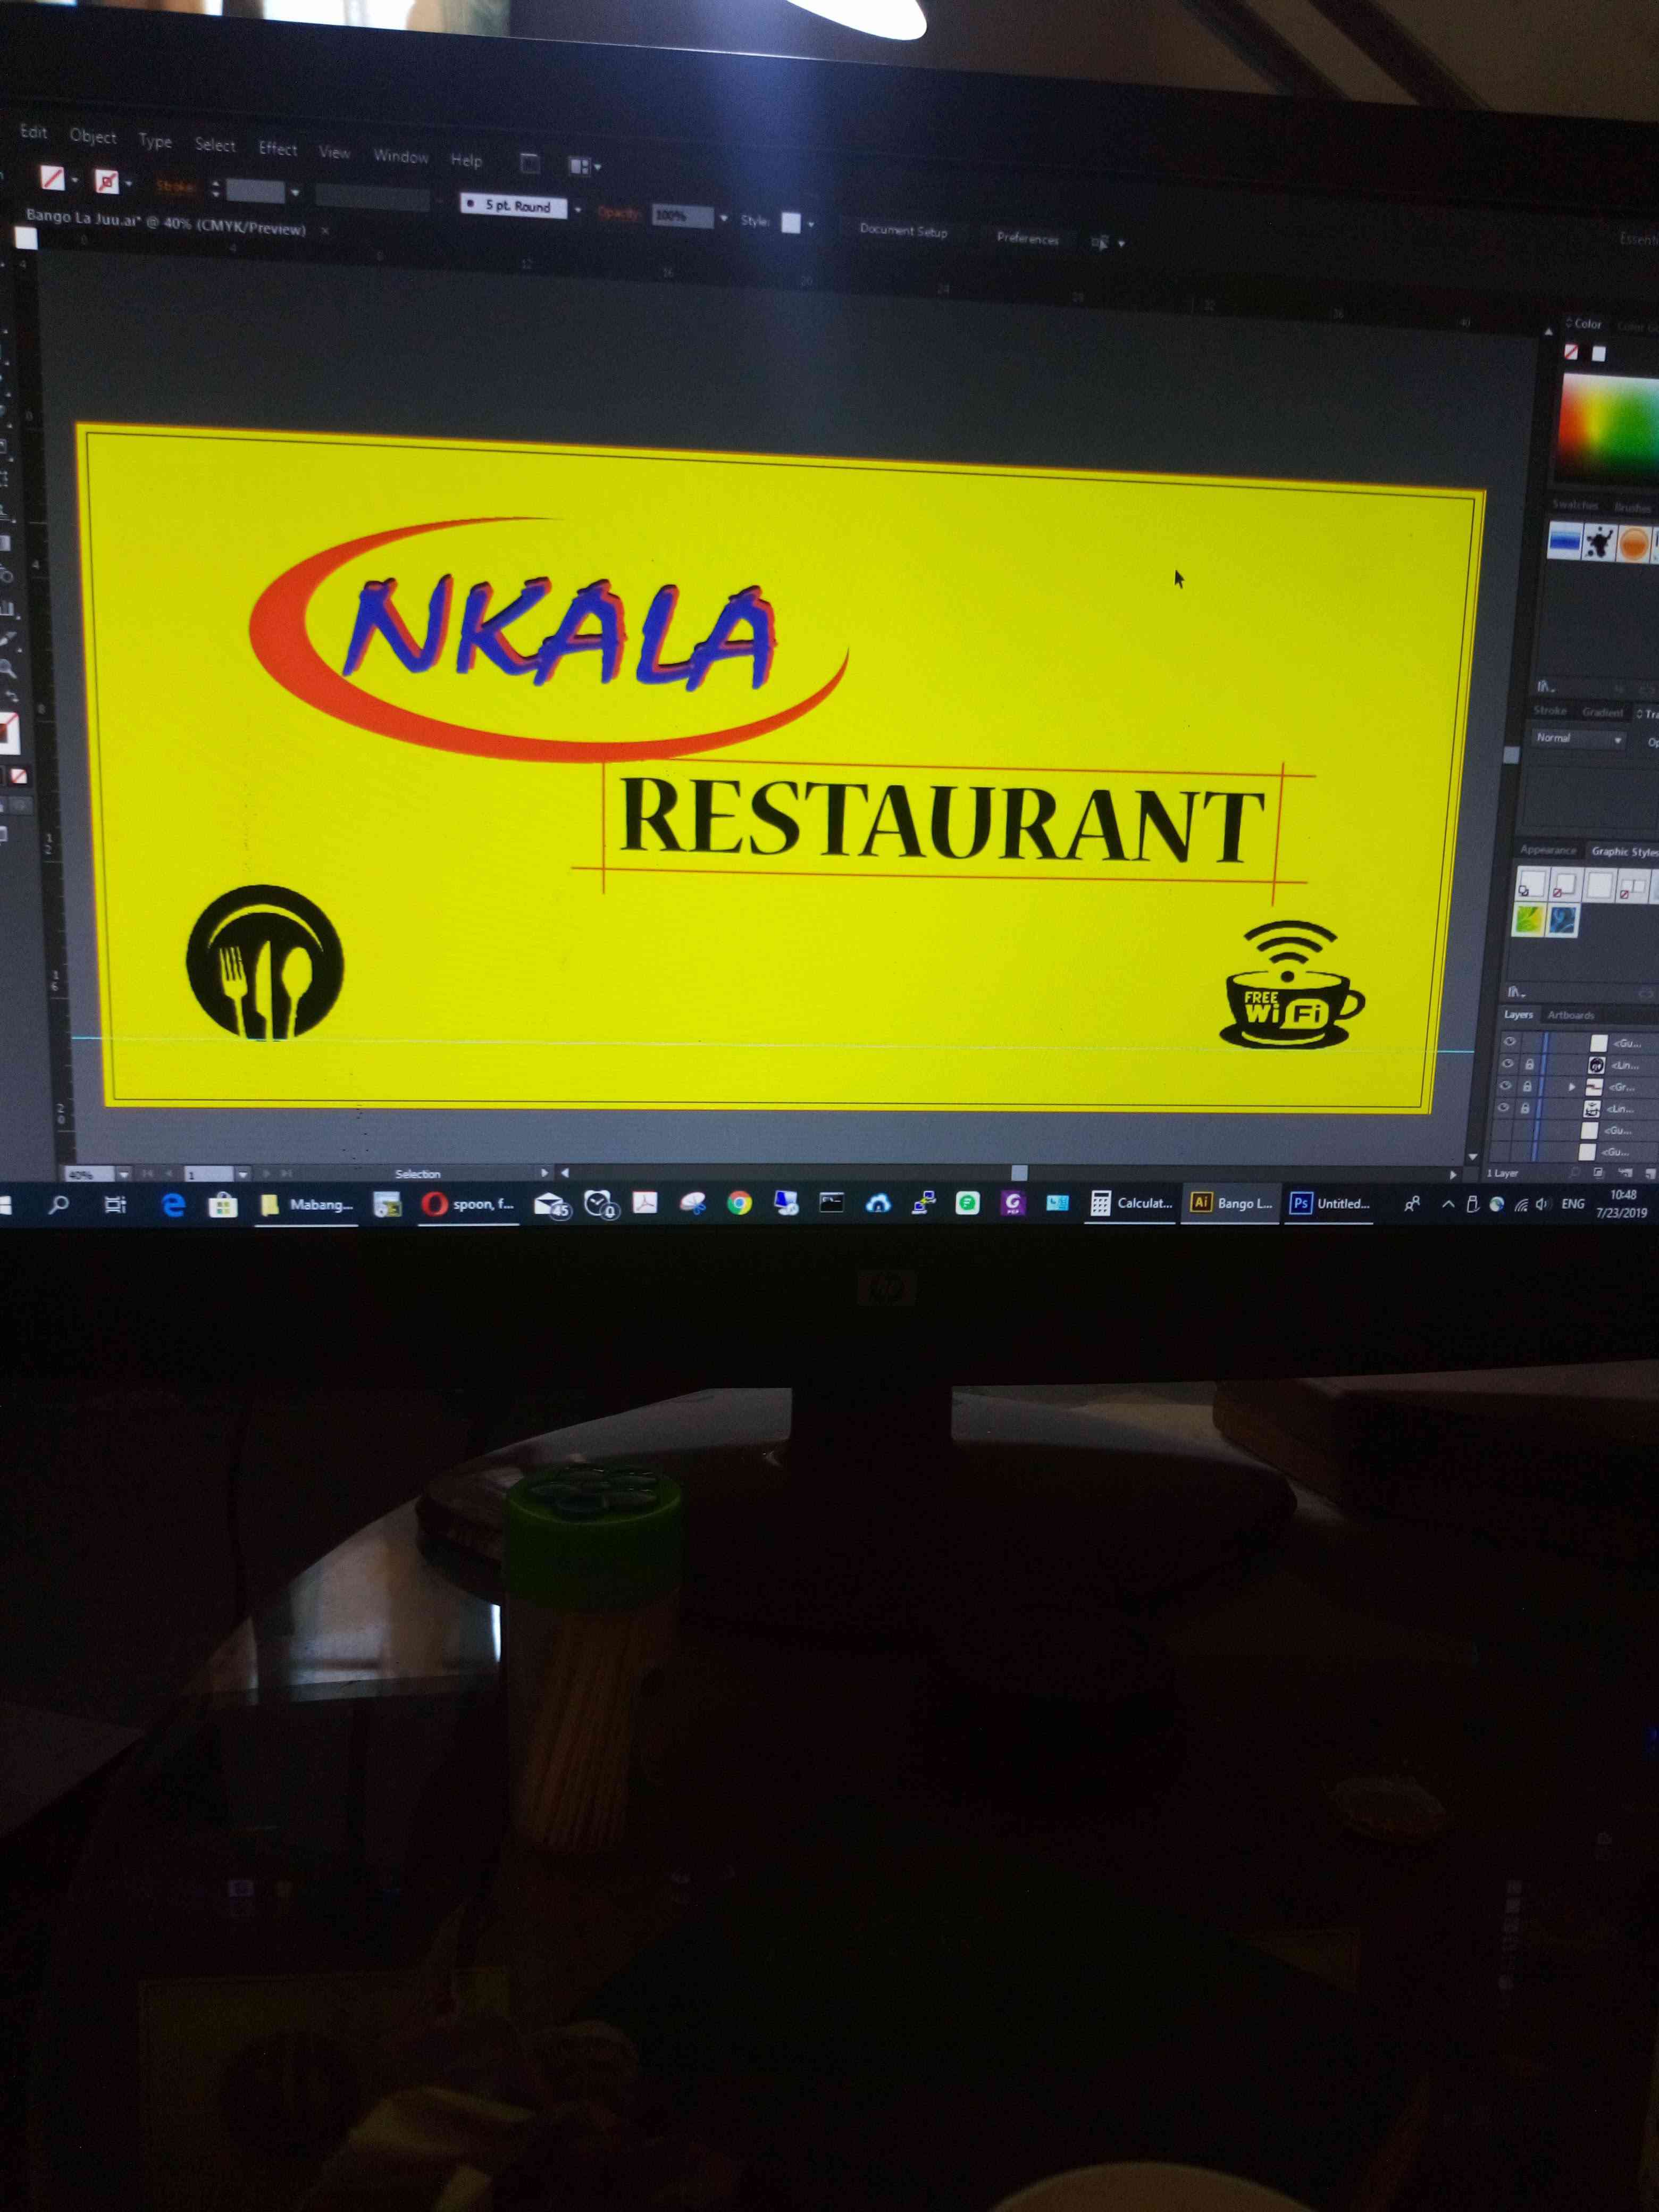 Nkala restaurant